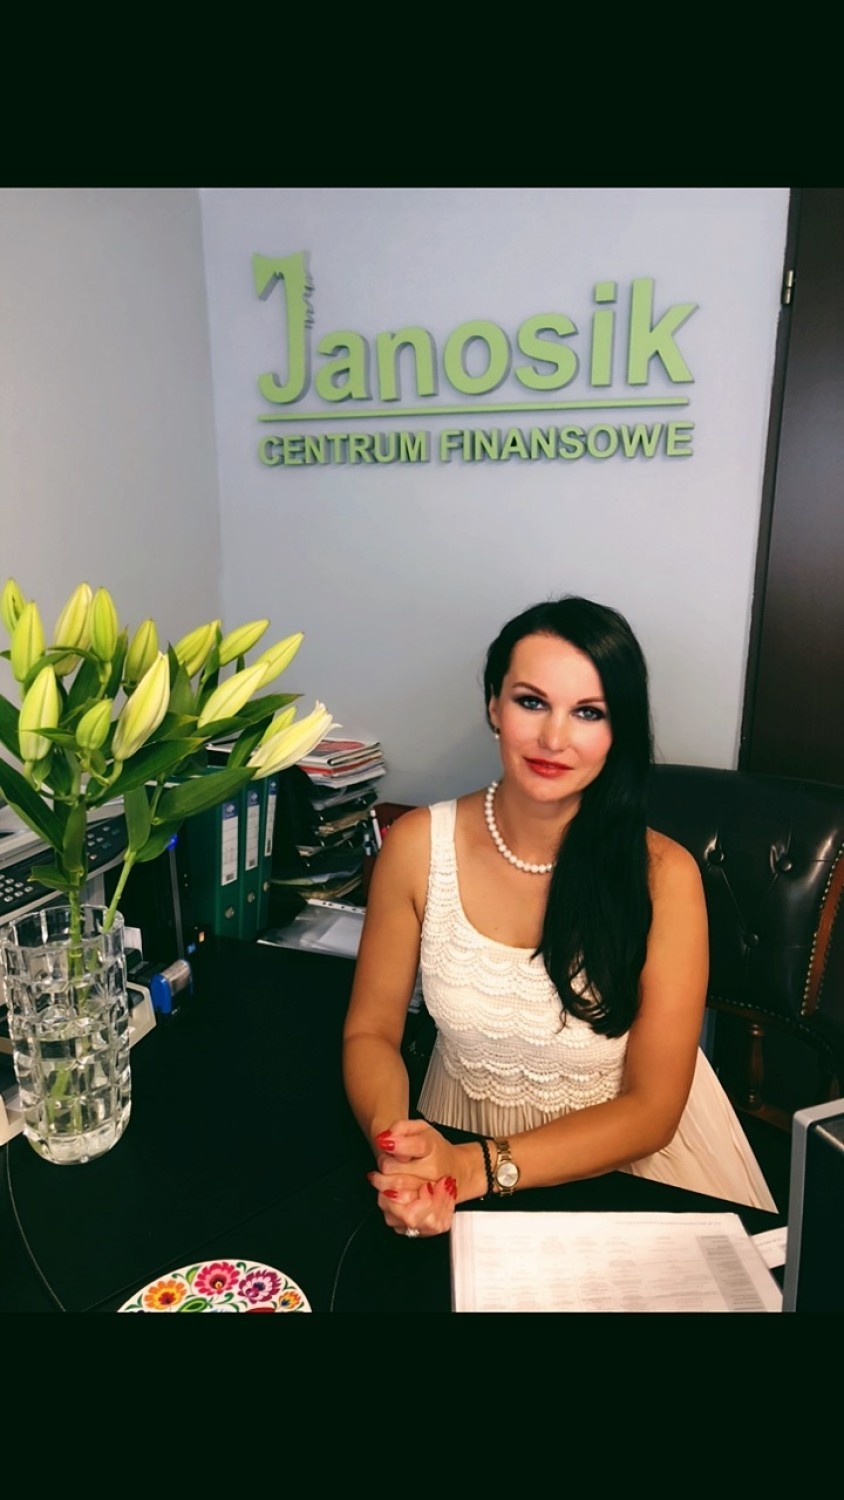 Centrum Finansowe Janosik - wsparcie finansowe z zaufanego źródła